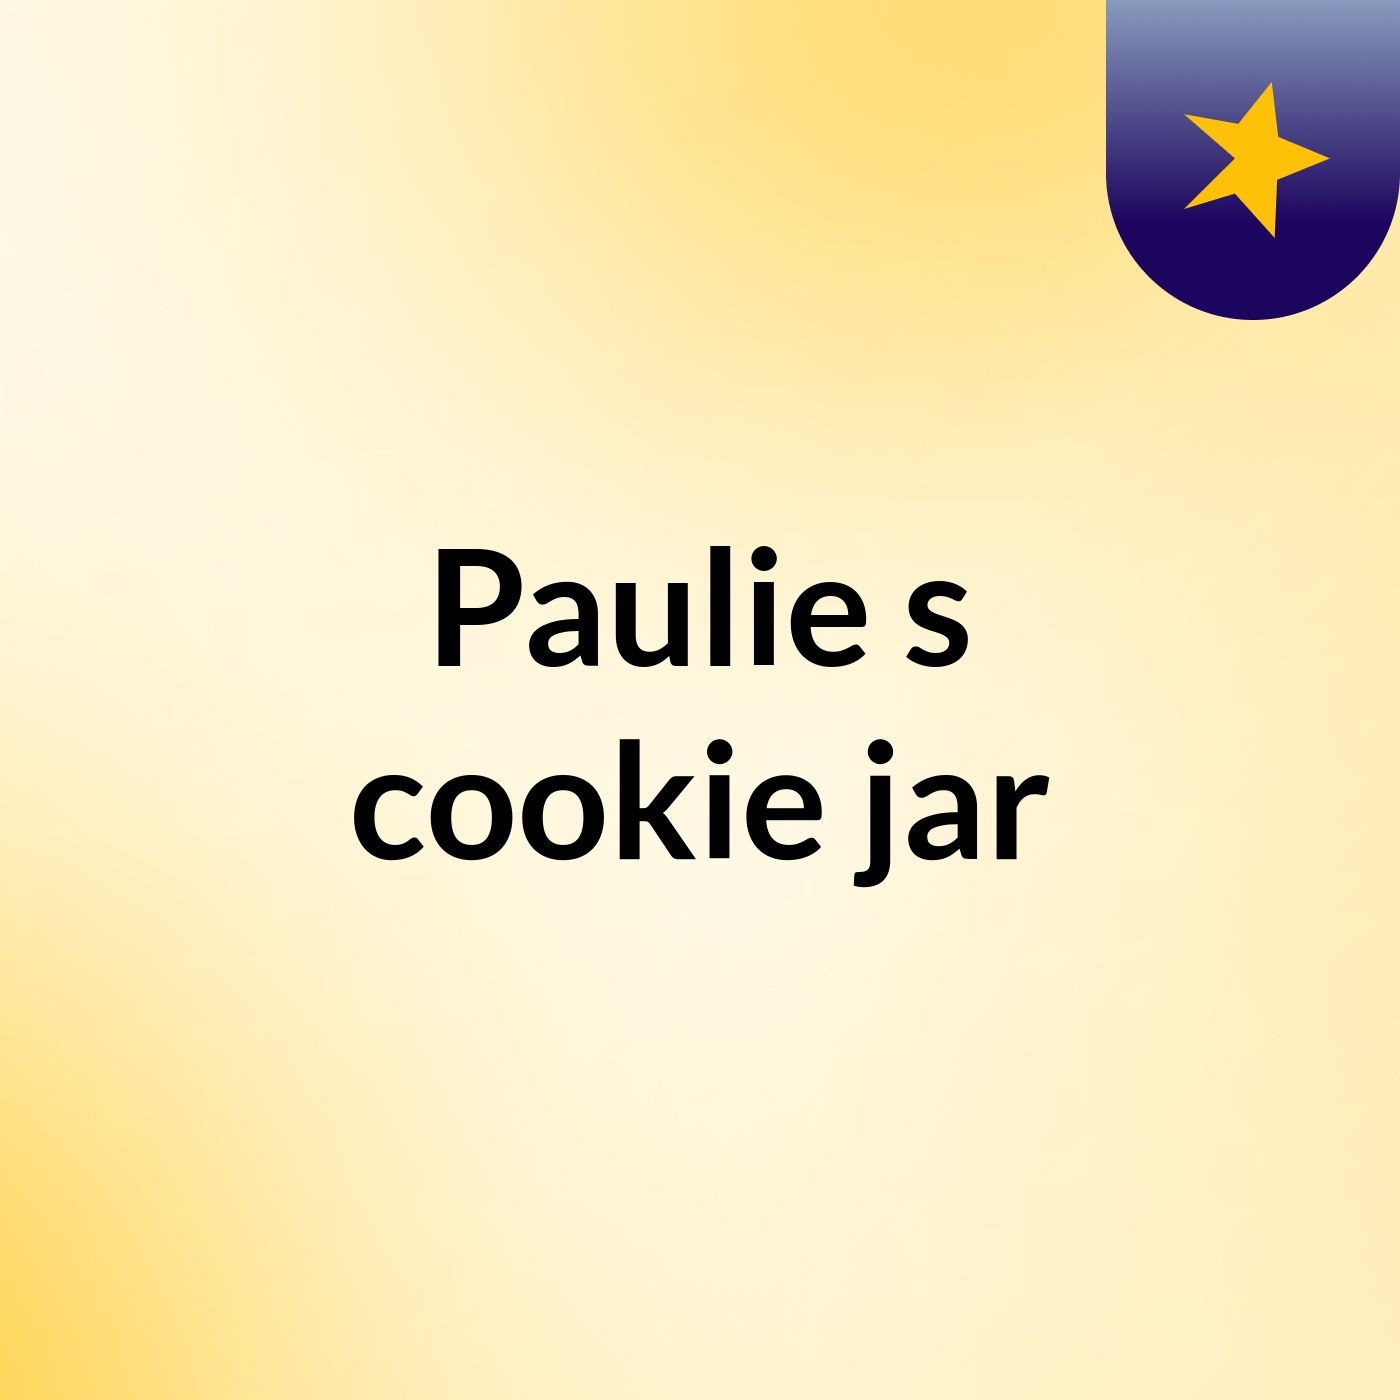 Paulie's cookie jar